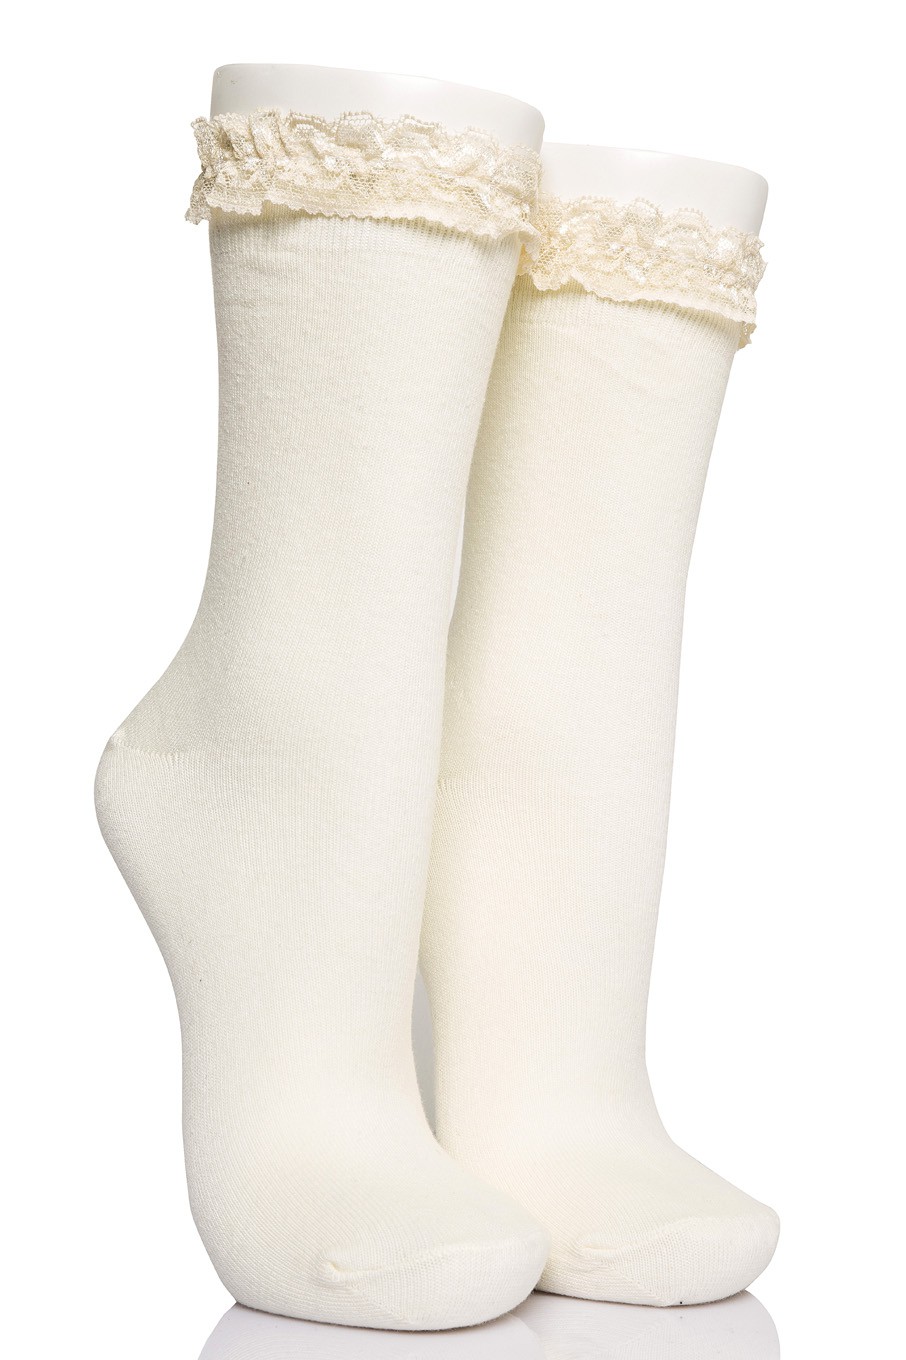 4’lü Kadın Dantelli Asortili Soket Çorabı